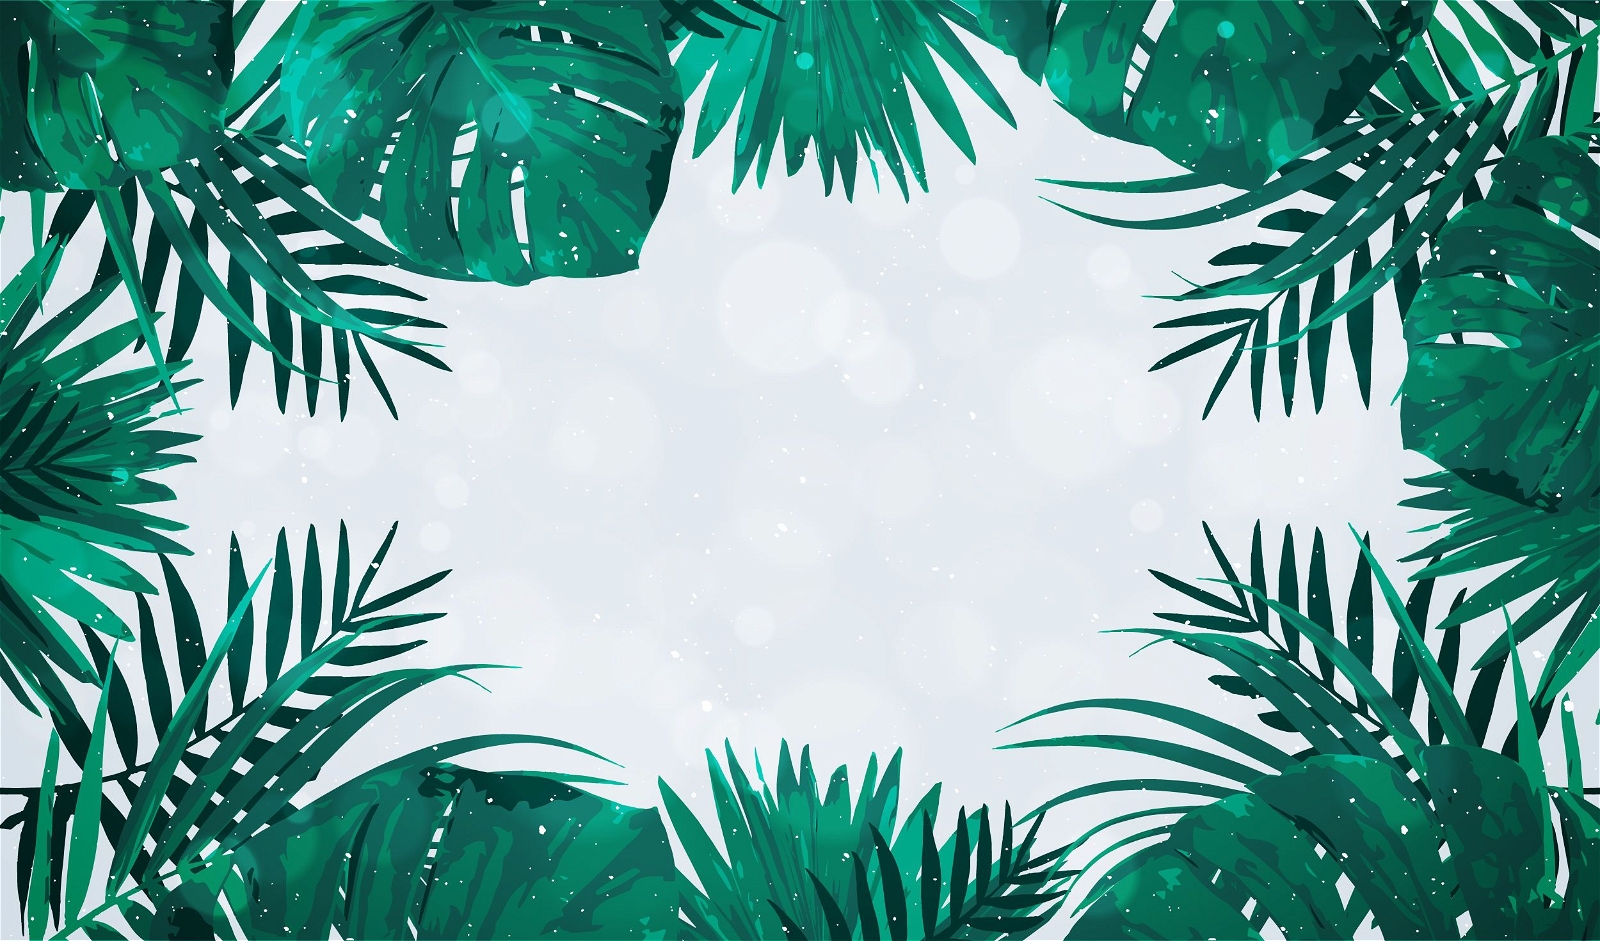 Quadro de folhas de palmeira